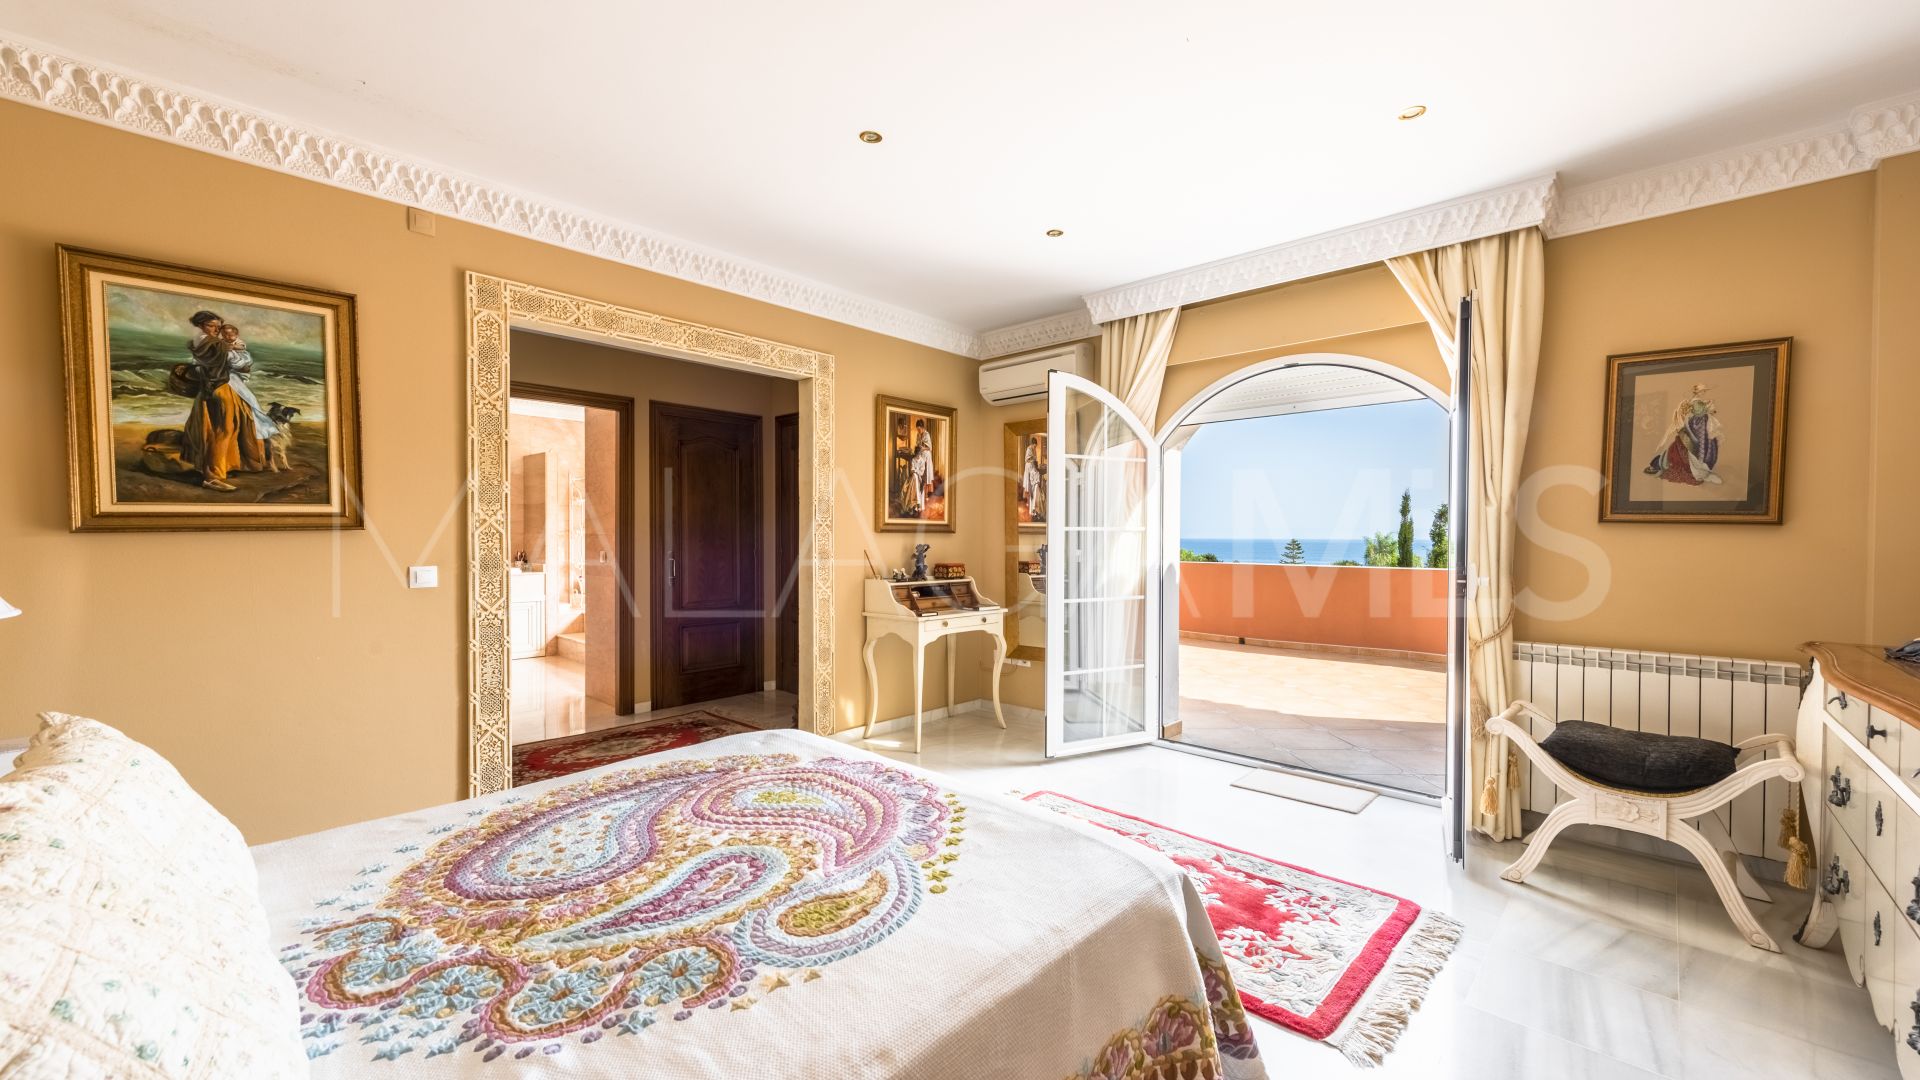 4 bedrooms villa in La Gaspara for sale